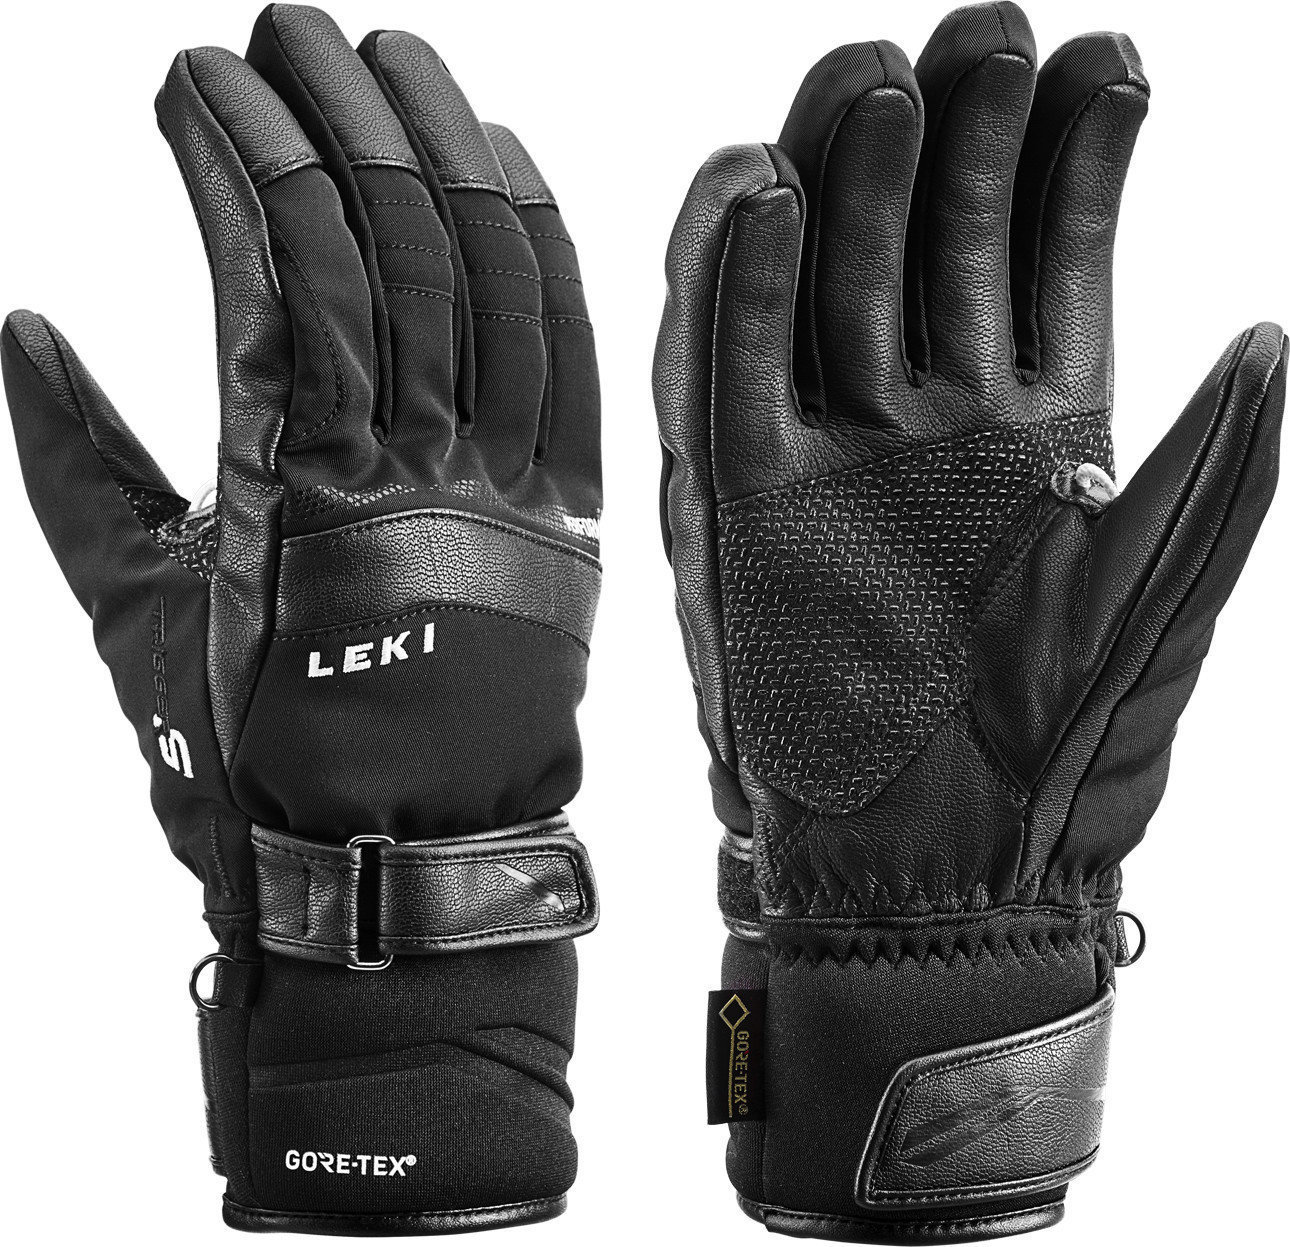 Smučarske rokavice Leki Performance S GTX Black 10,5 Smučarske rokavice